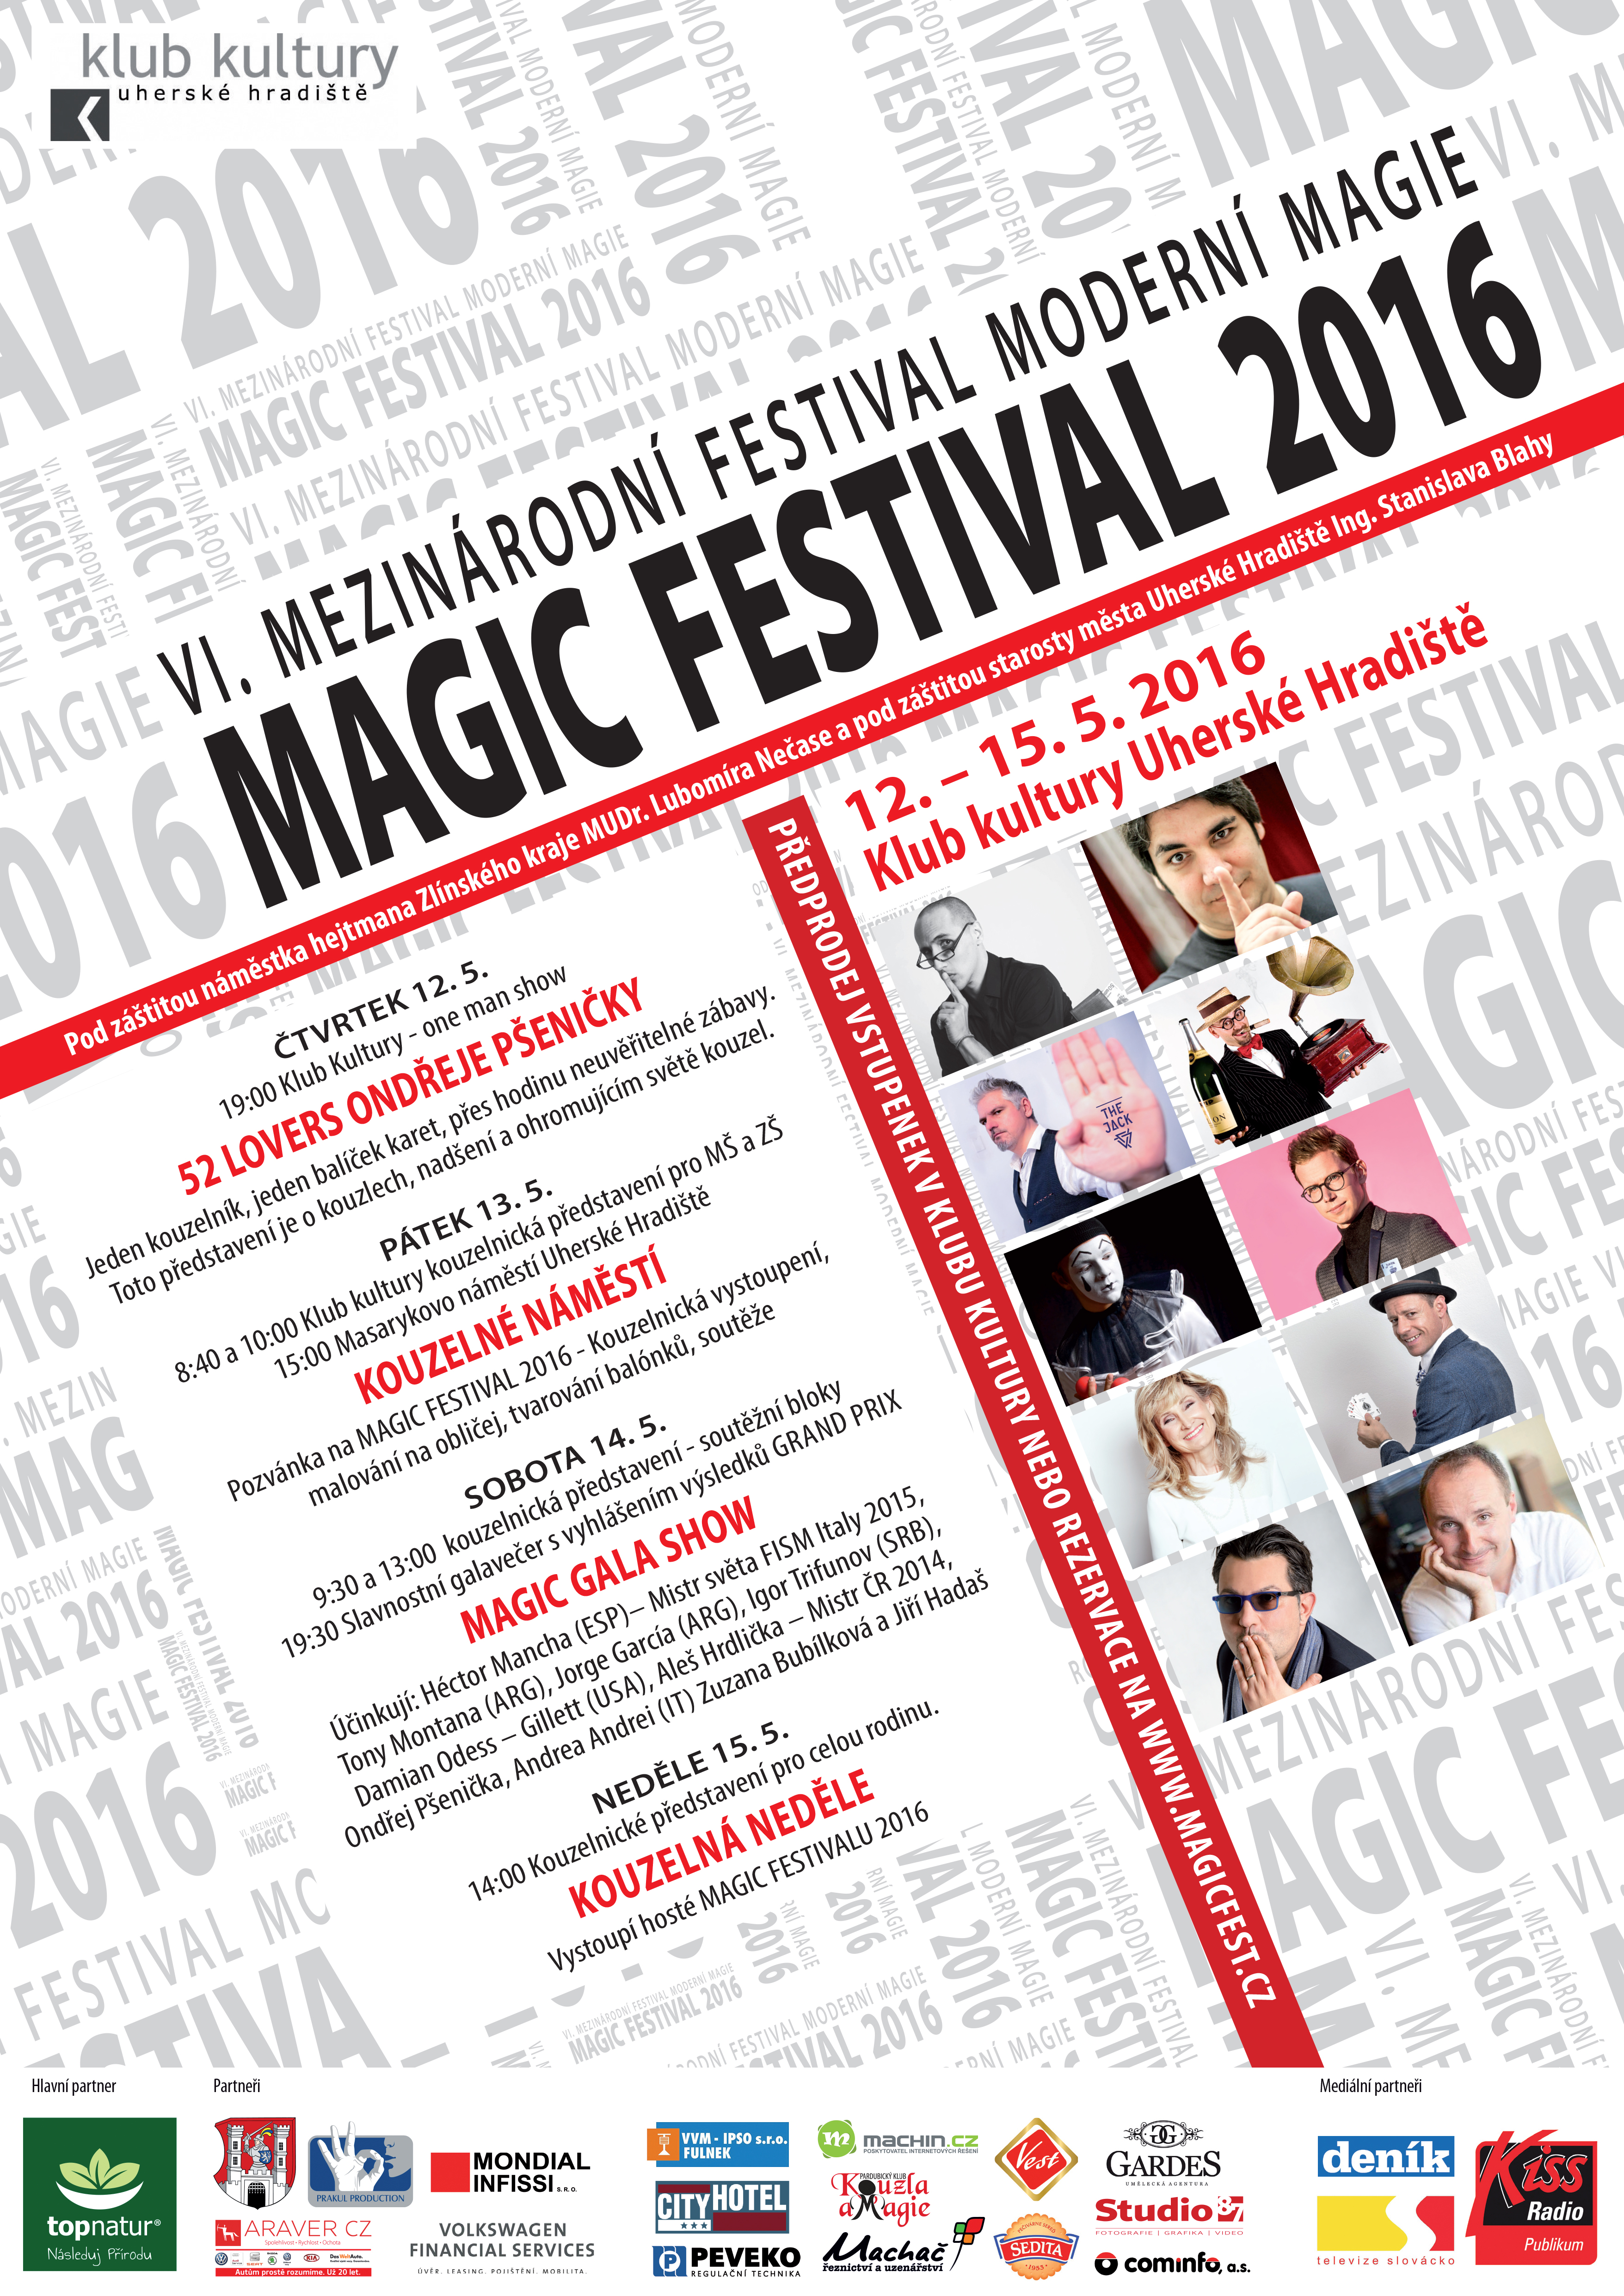 Magic festival Uherské Hradiště Český magický svaz